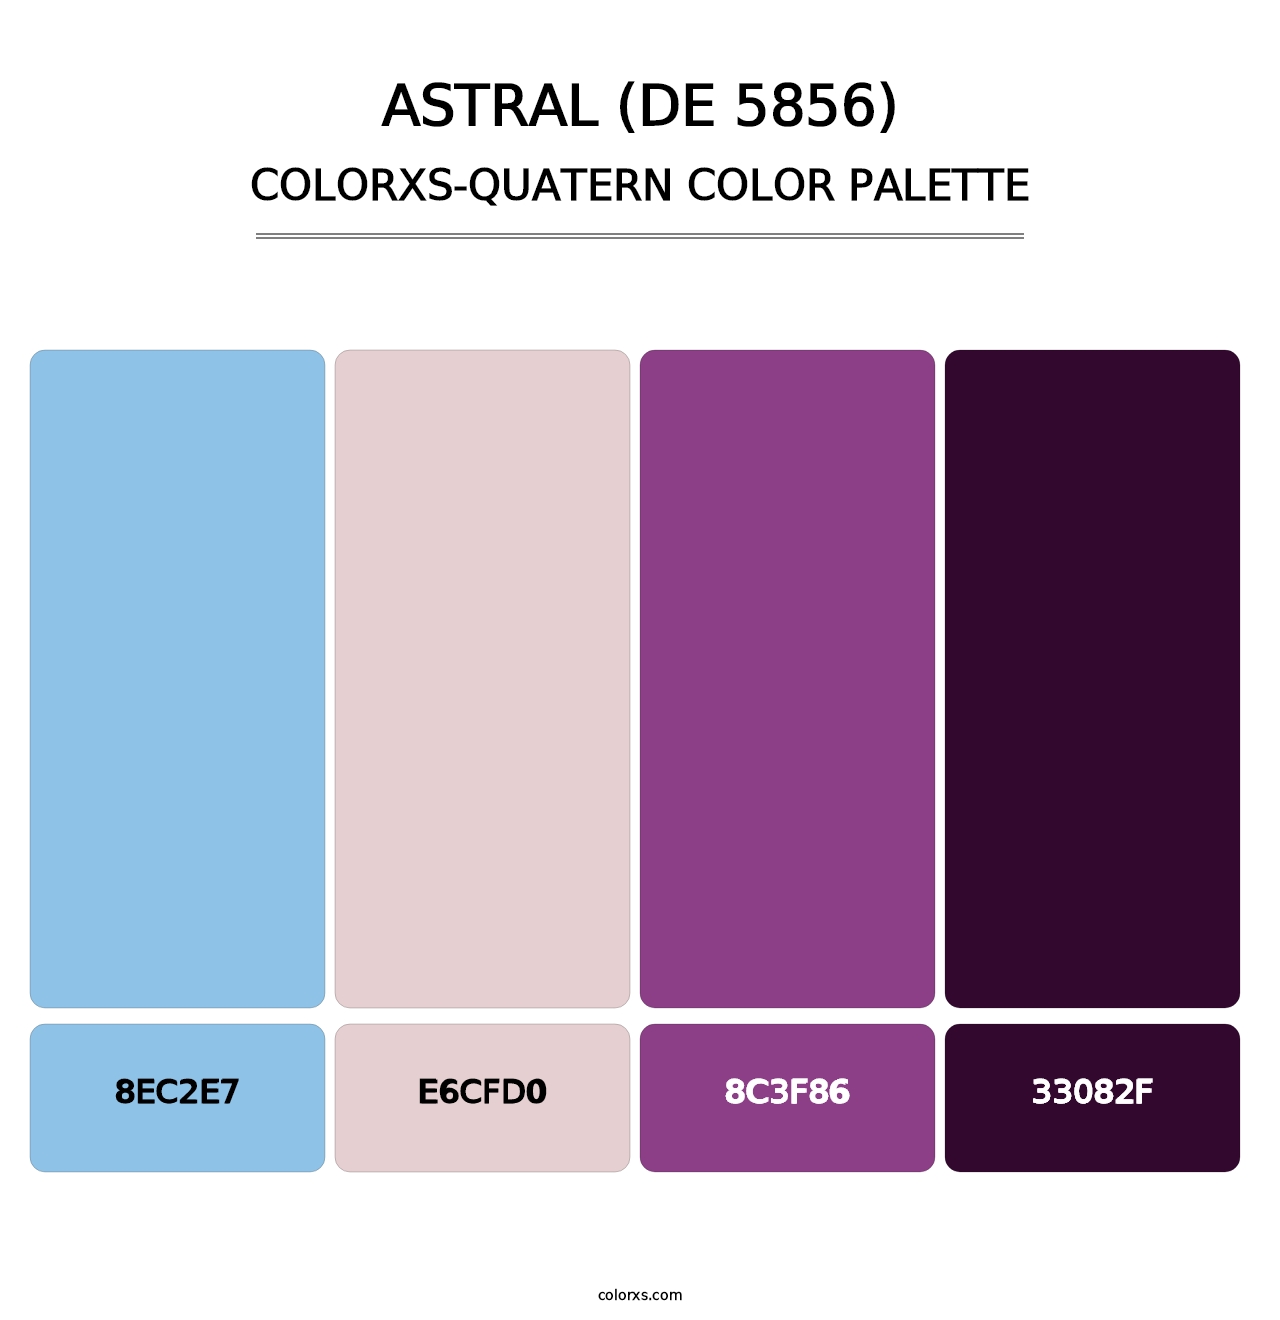 Astral (DE 5856) - Colorxs Quatern Palette